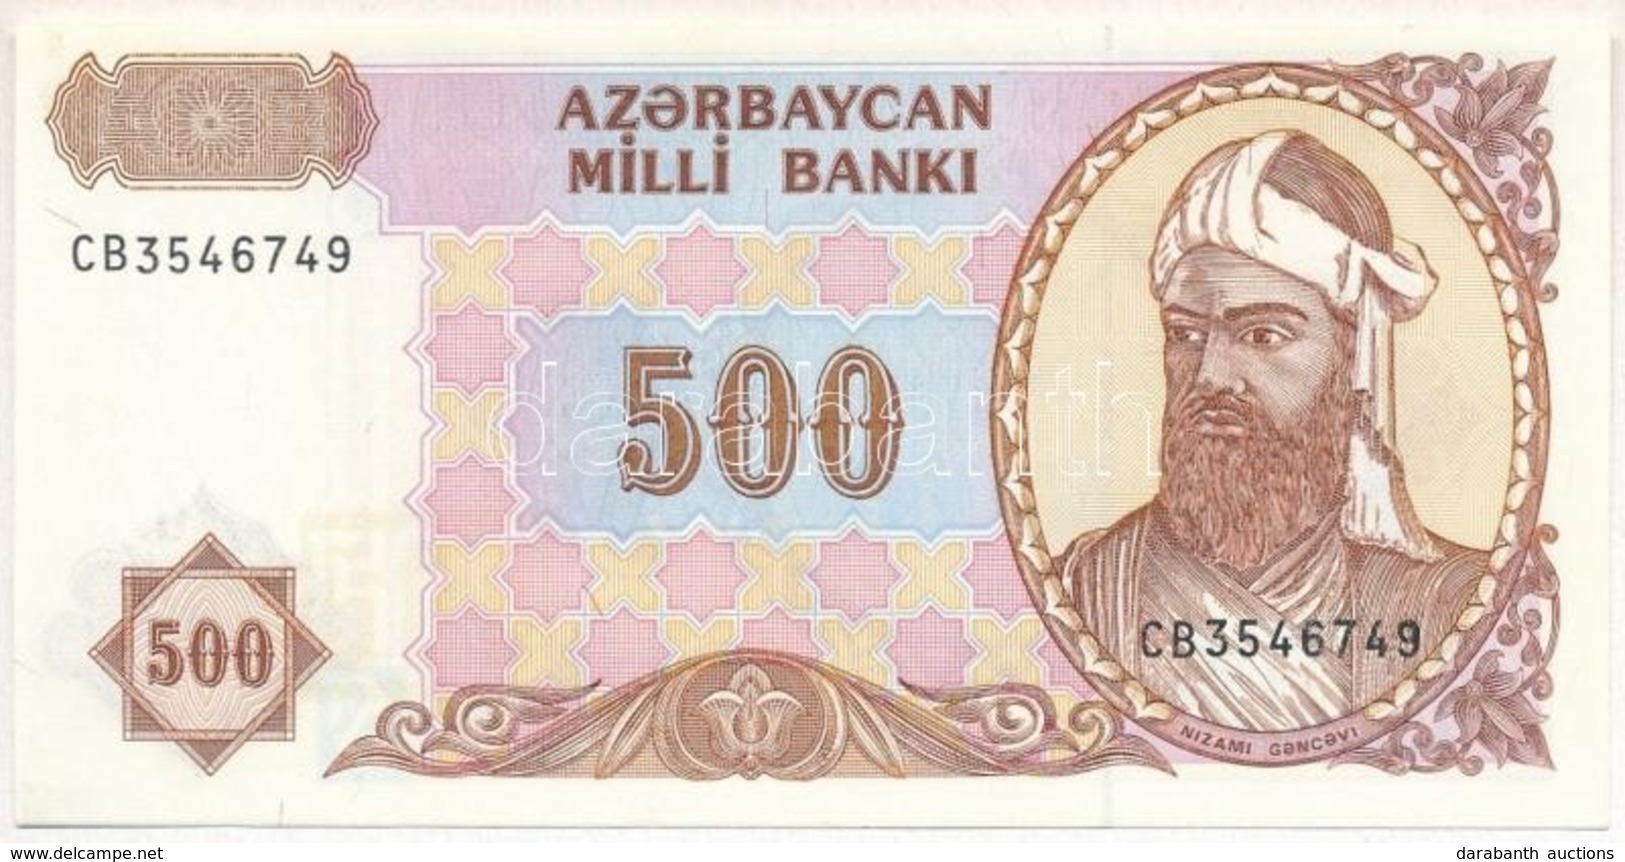 Azerbajdzsán 1993. 500M T:I
Azerbaijan 1993. 500 Manat C:UNC
Krause 19.b - Unclassified